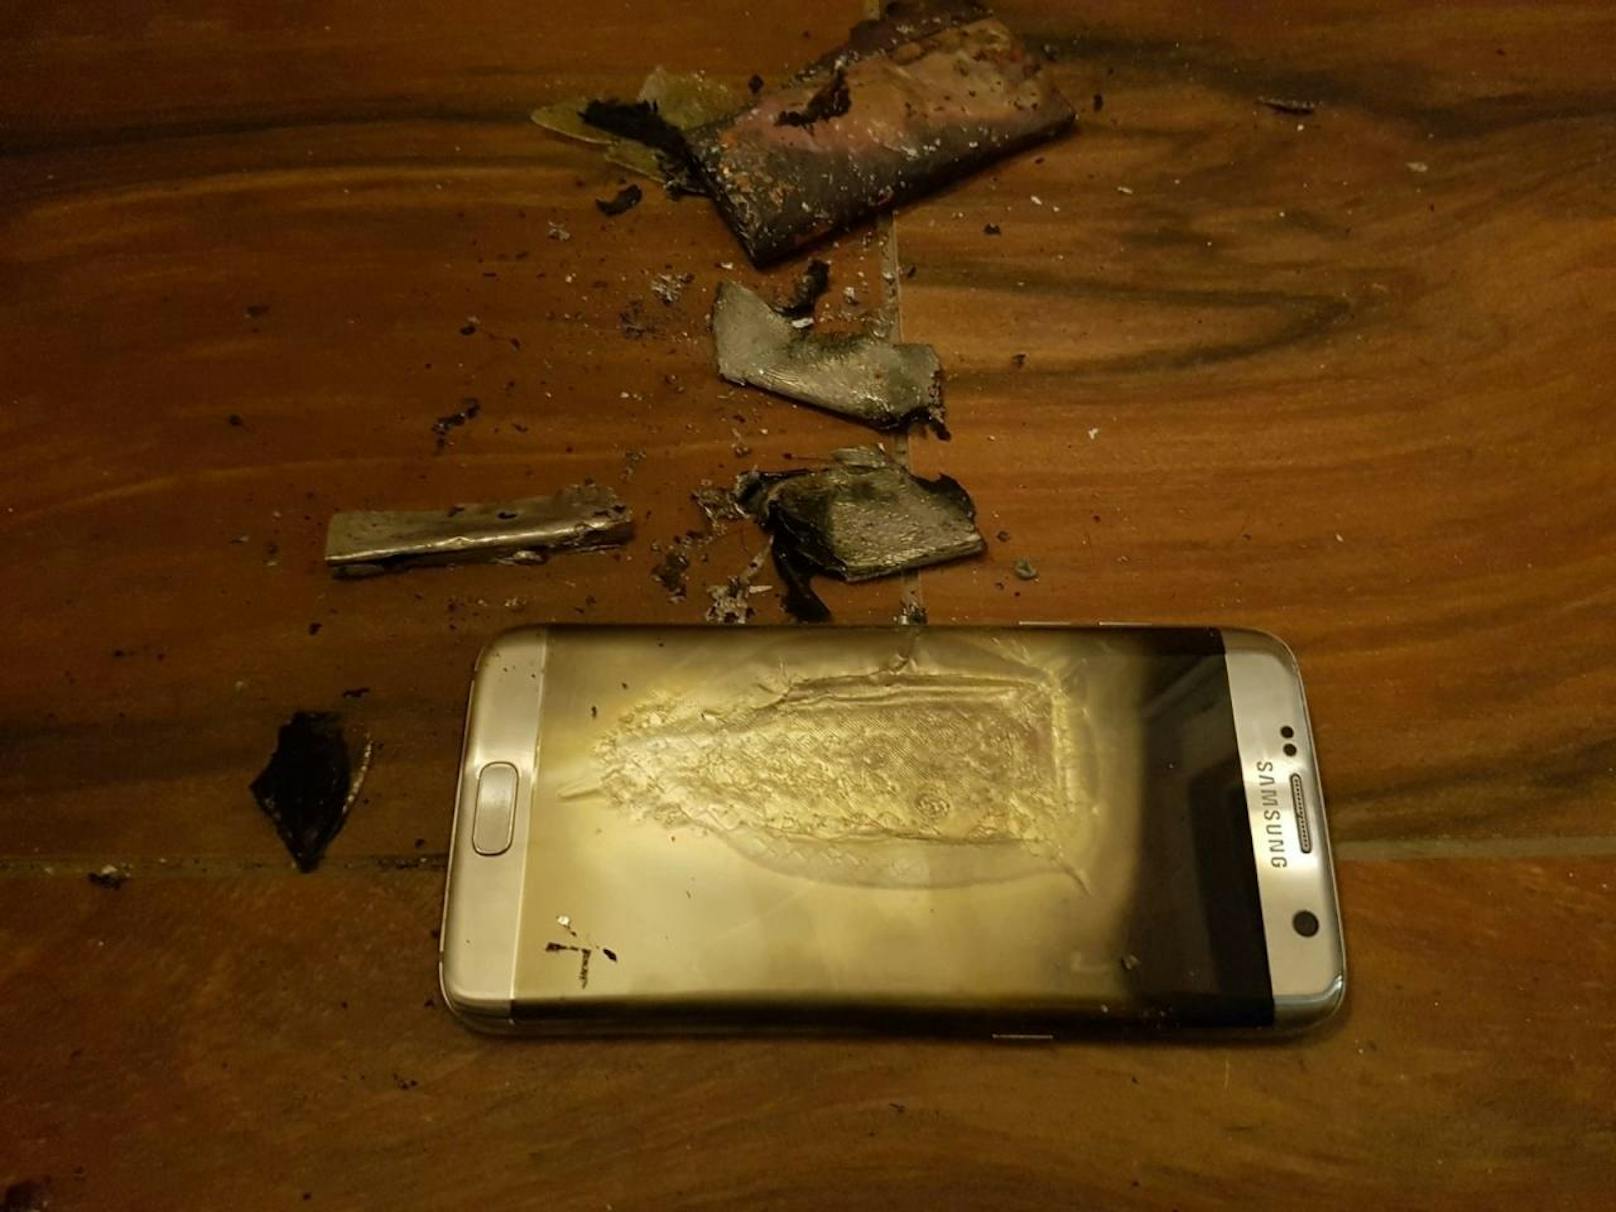 Die traurigen Überreste des Samsung Galaxy S7 Edge, dessen Akku explodiert war.